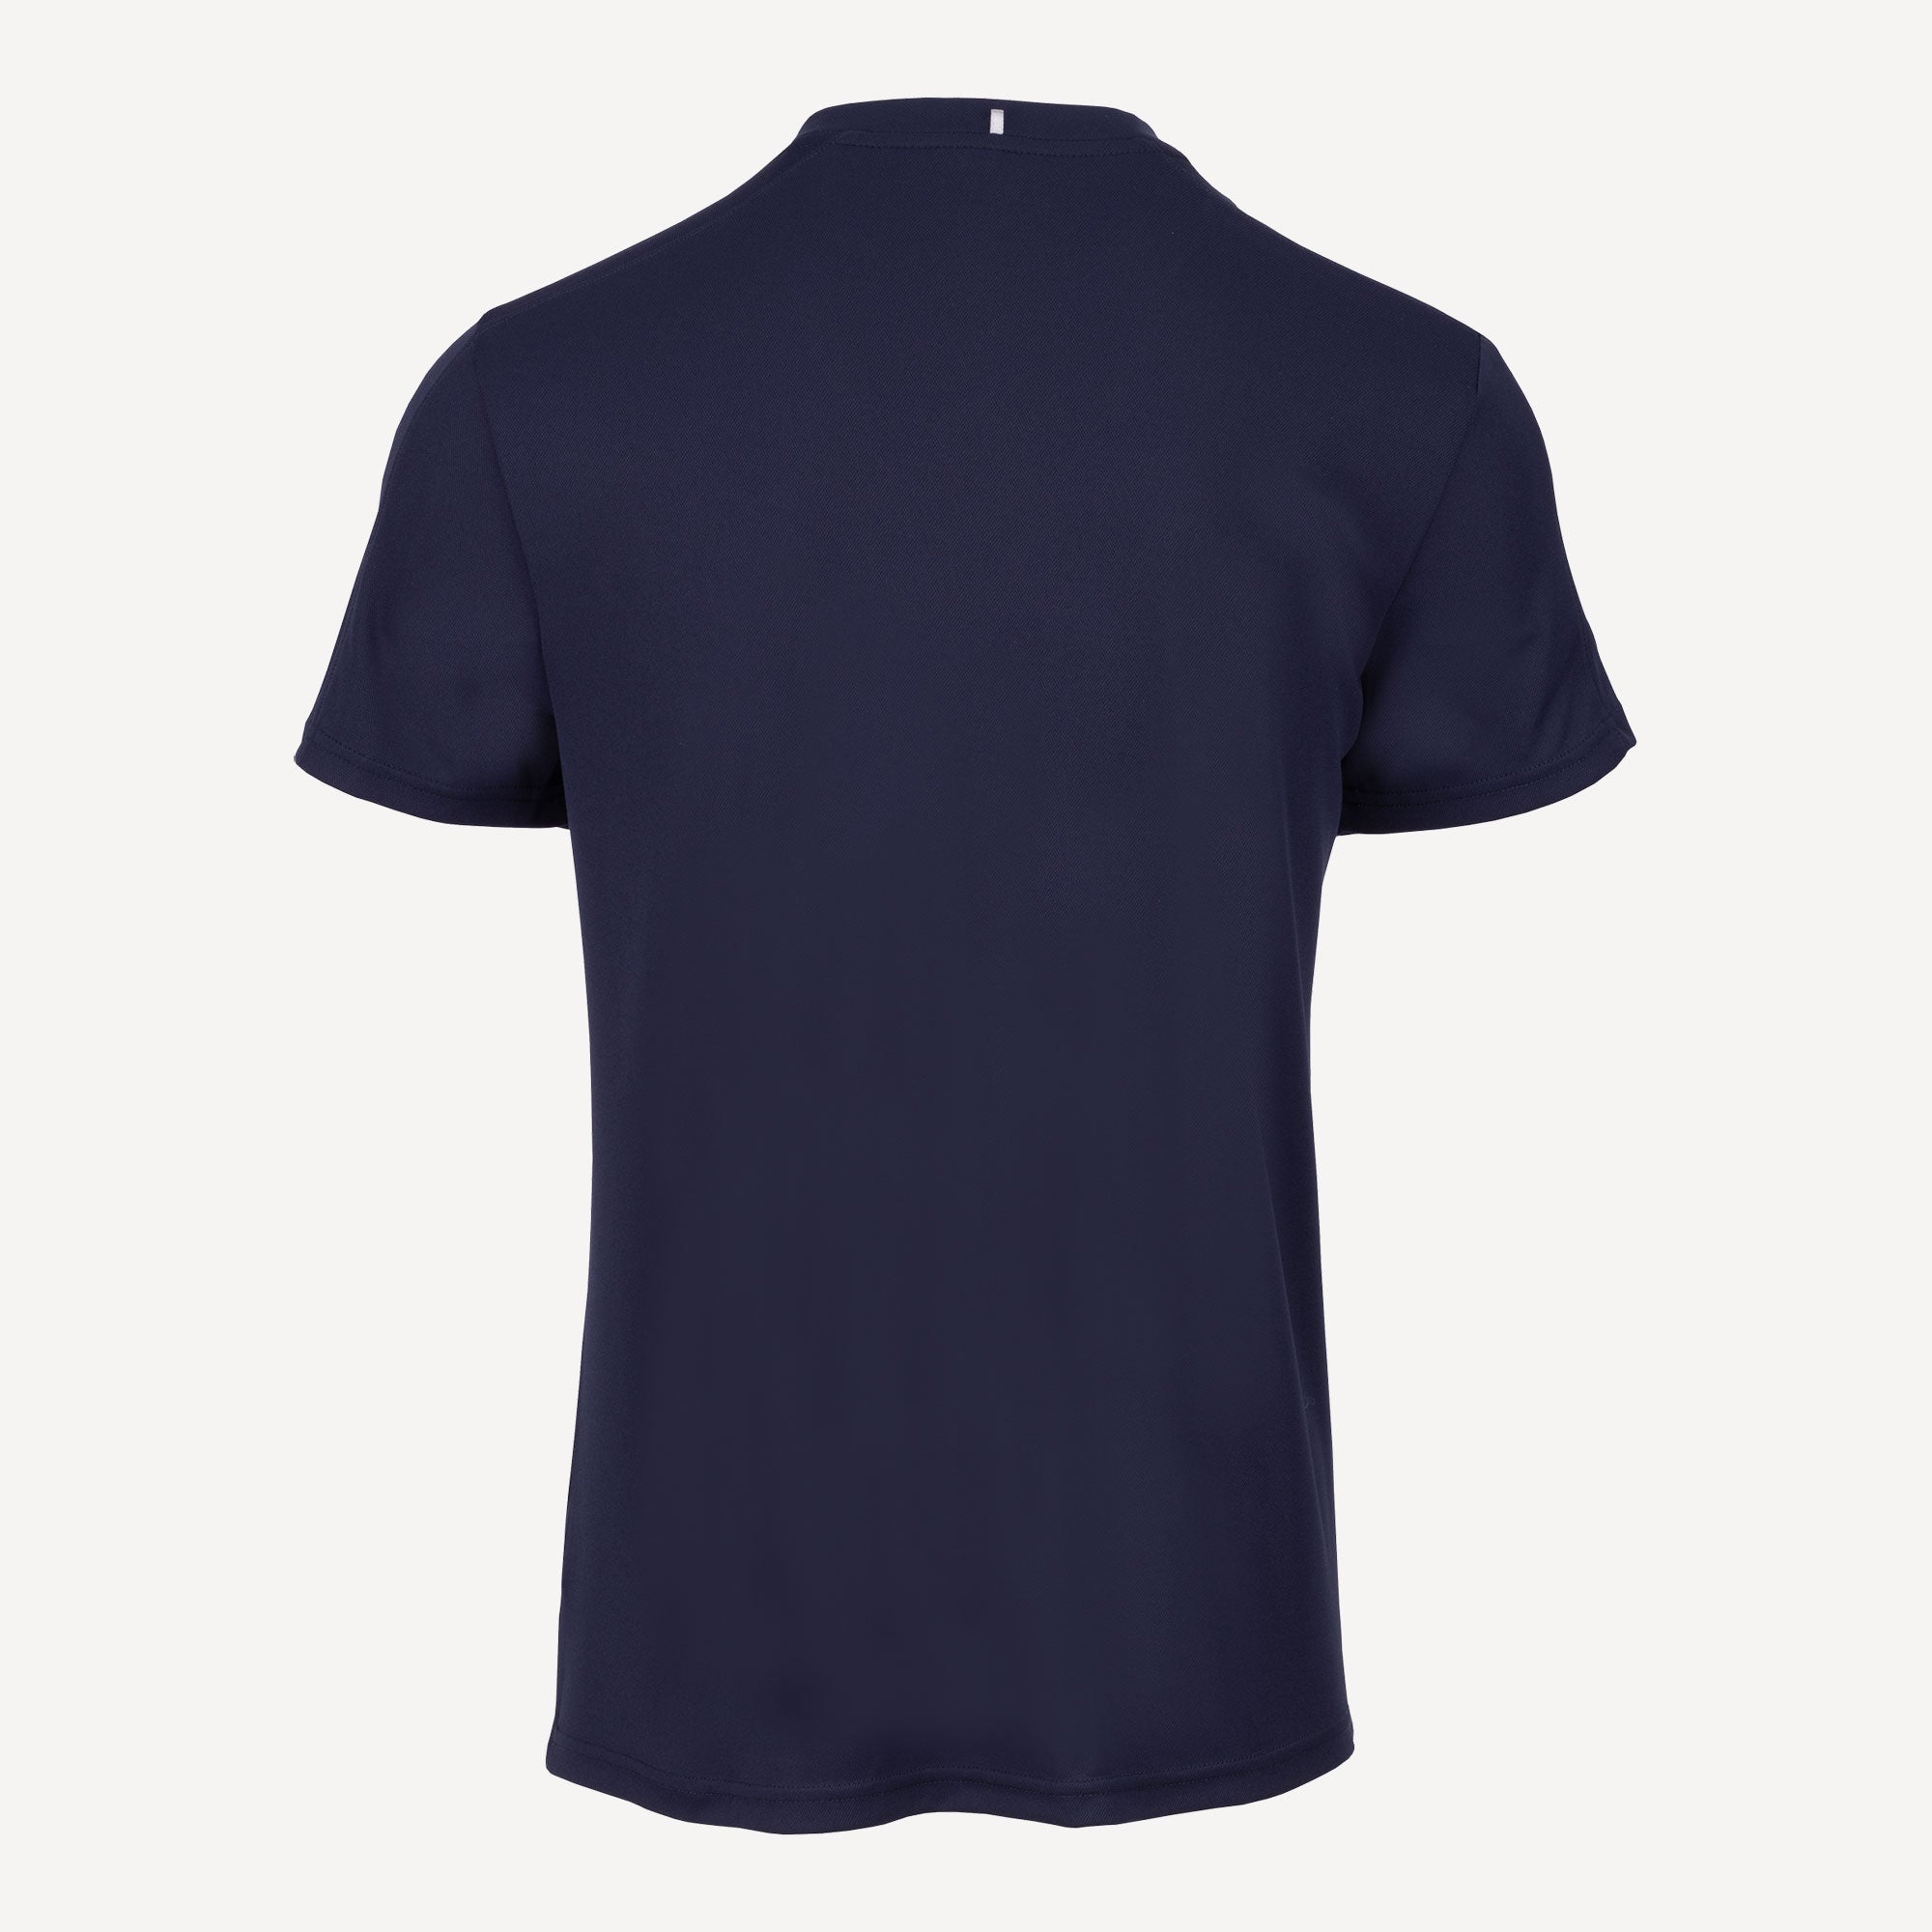 Fila Emilio Men's Tennis Shirt Dark Blue (2)